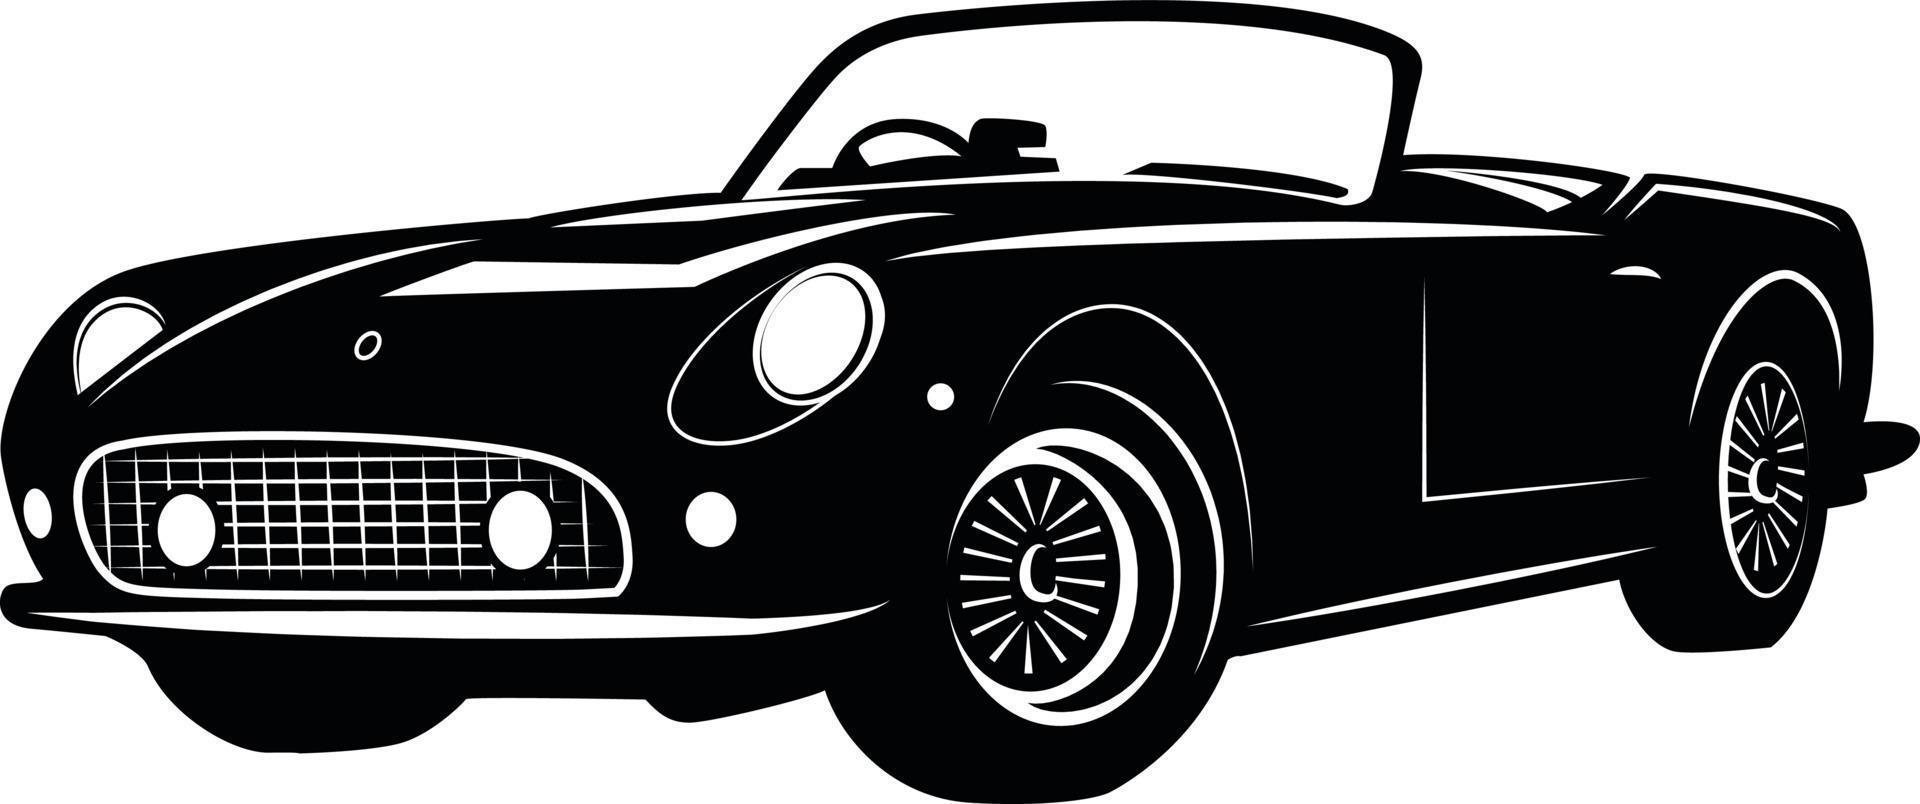 zwart en wit illustratie van een oud automobiel vector